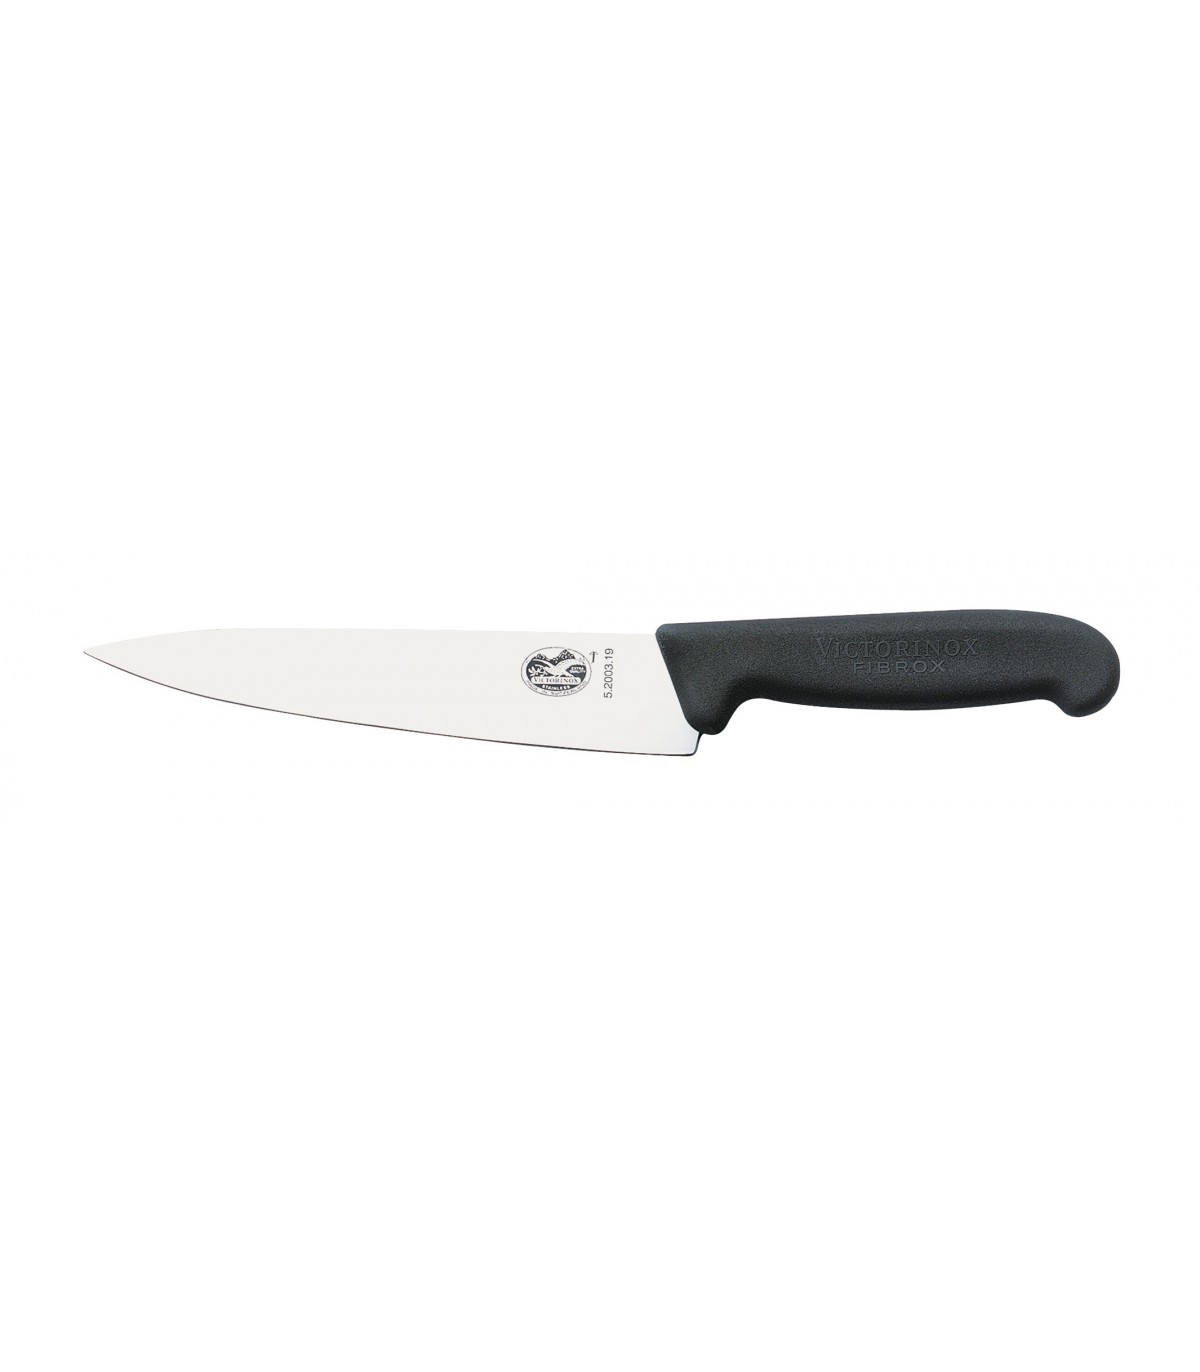 Victorinox - Couteau d'office - 3.80 € - à acheter sur ProCouteaux